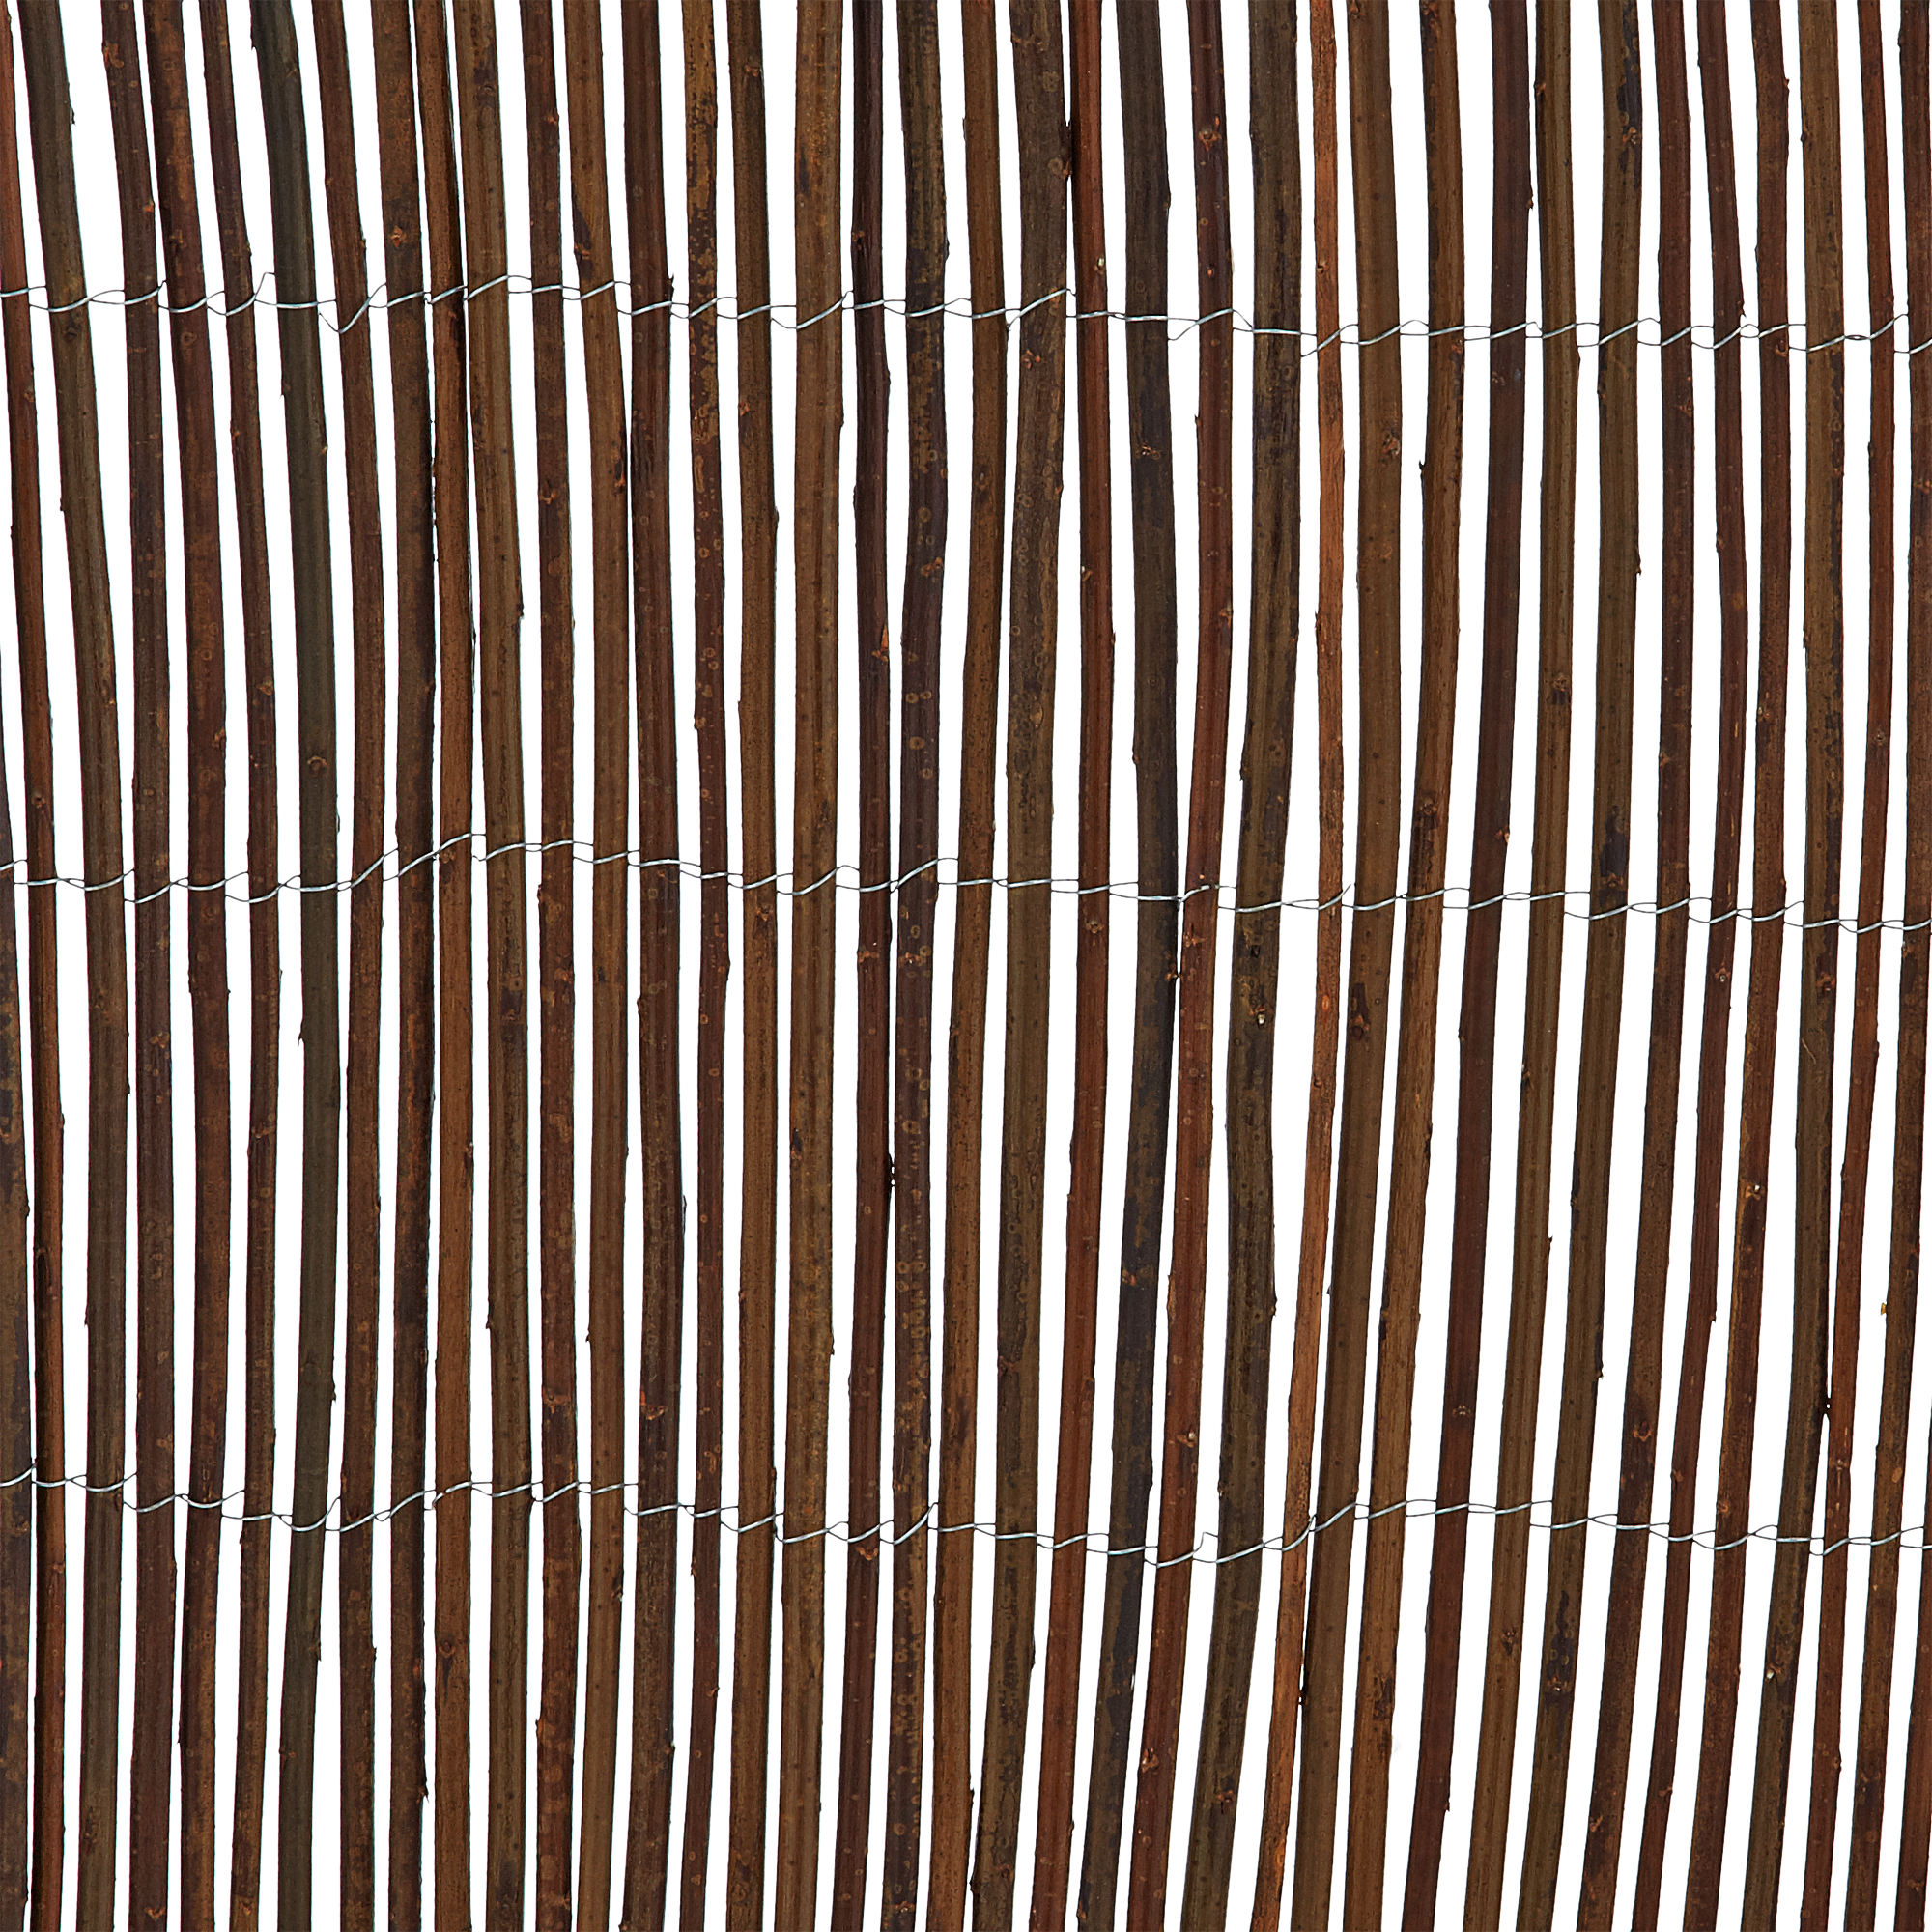 Sichtschutzmatte Weidenholz 300 x 90 cm + product picture